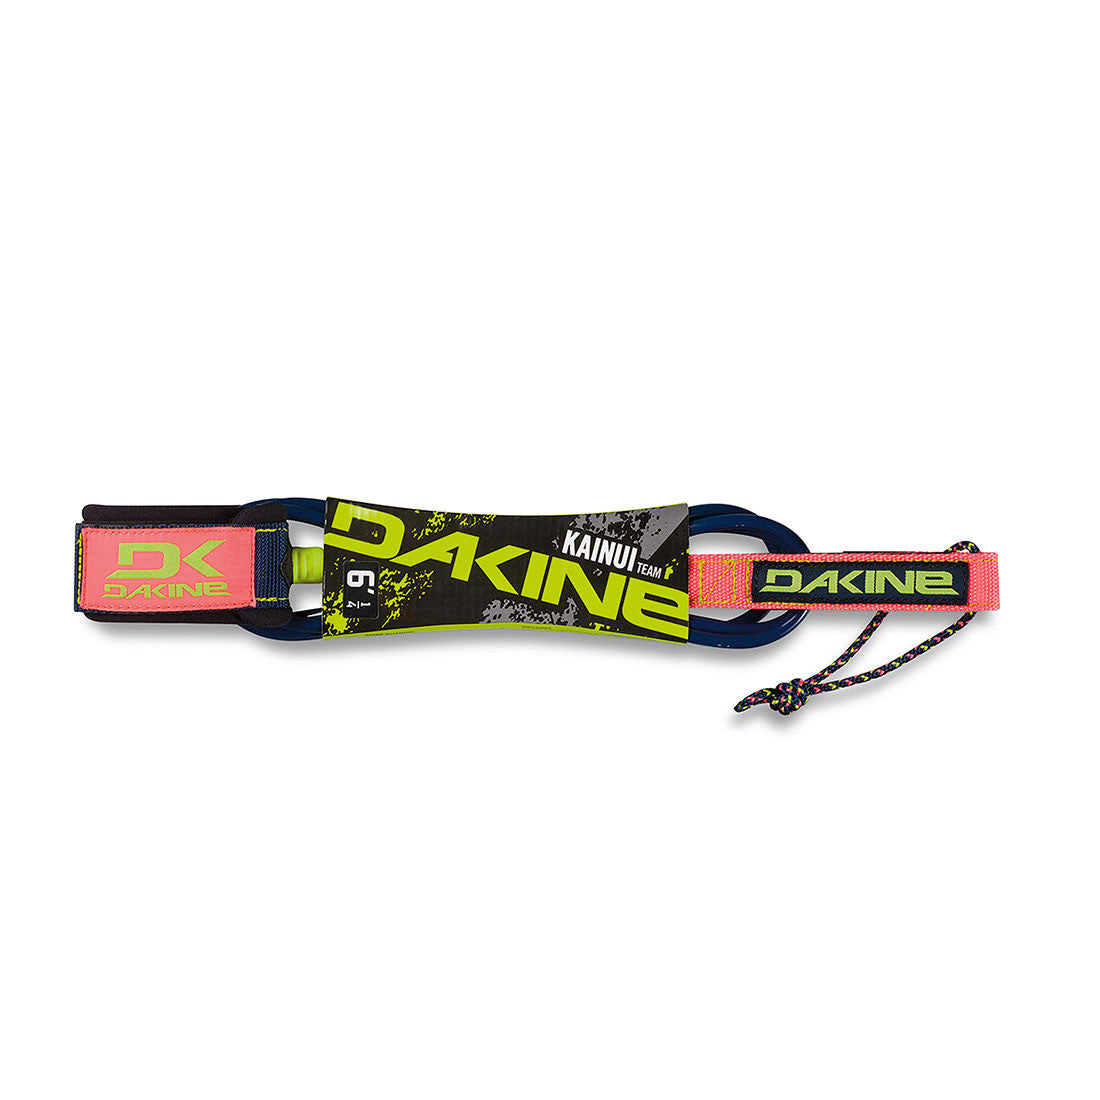 Dakine Kainui Team 6' x 1/4" Surfboard Leash (Neon)